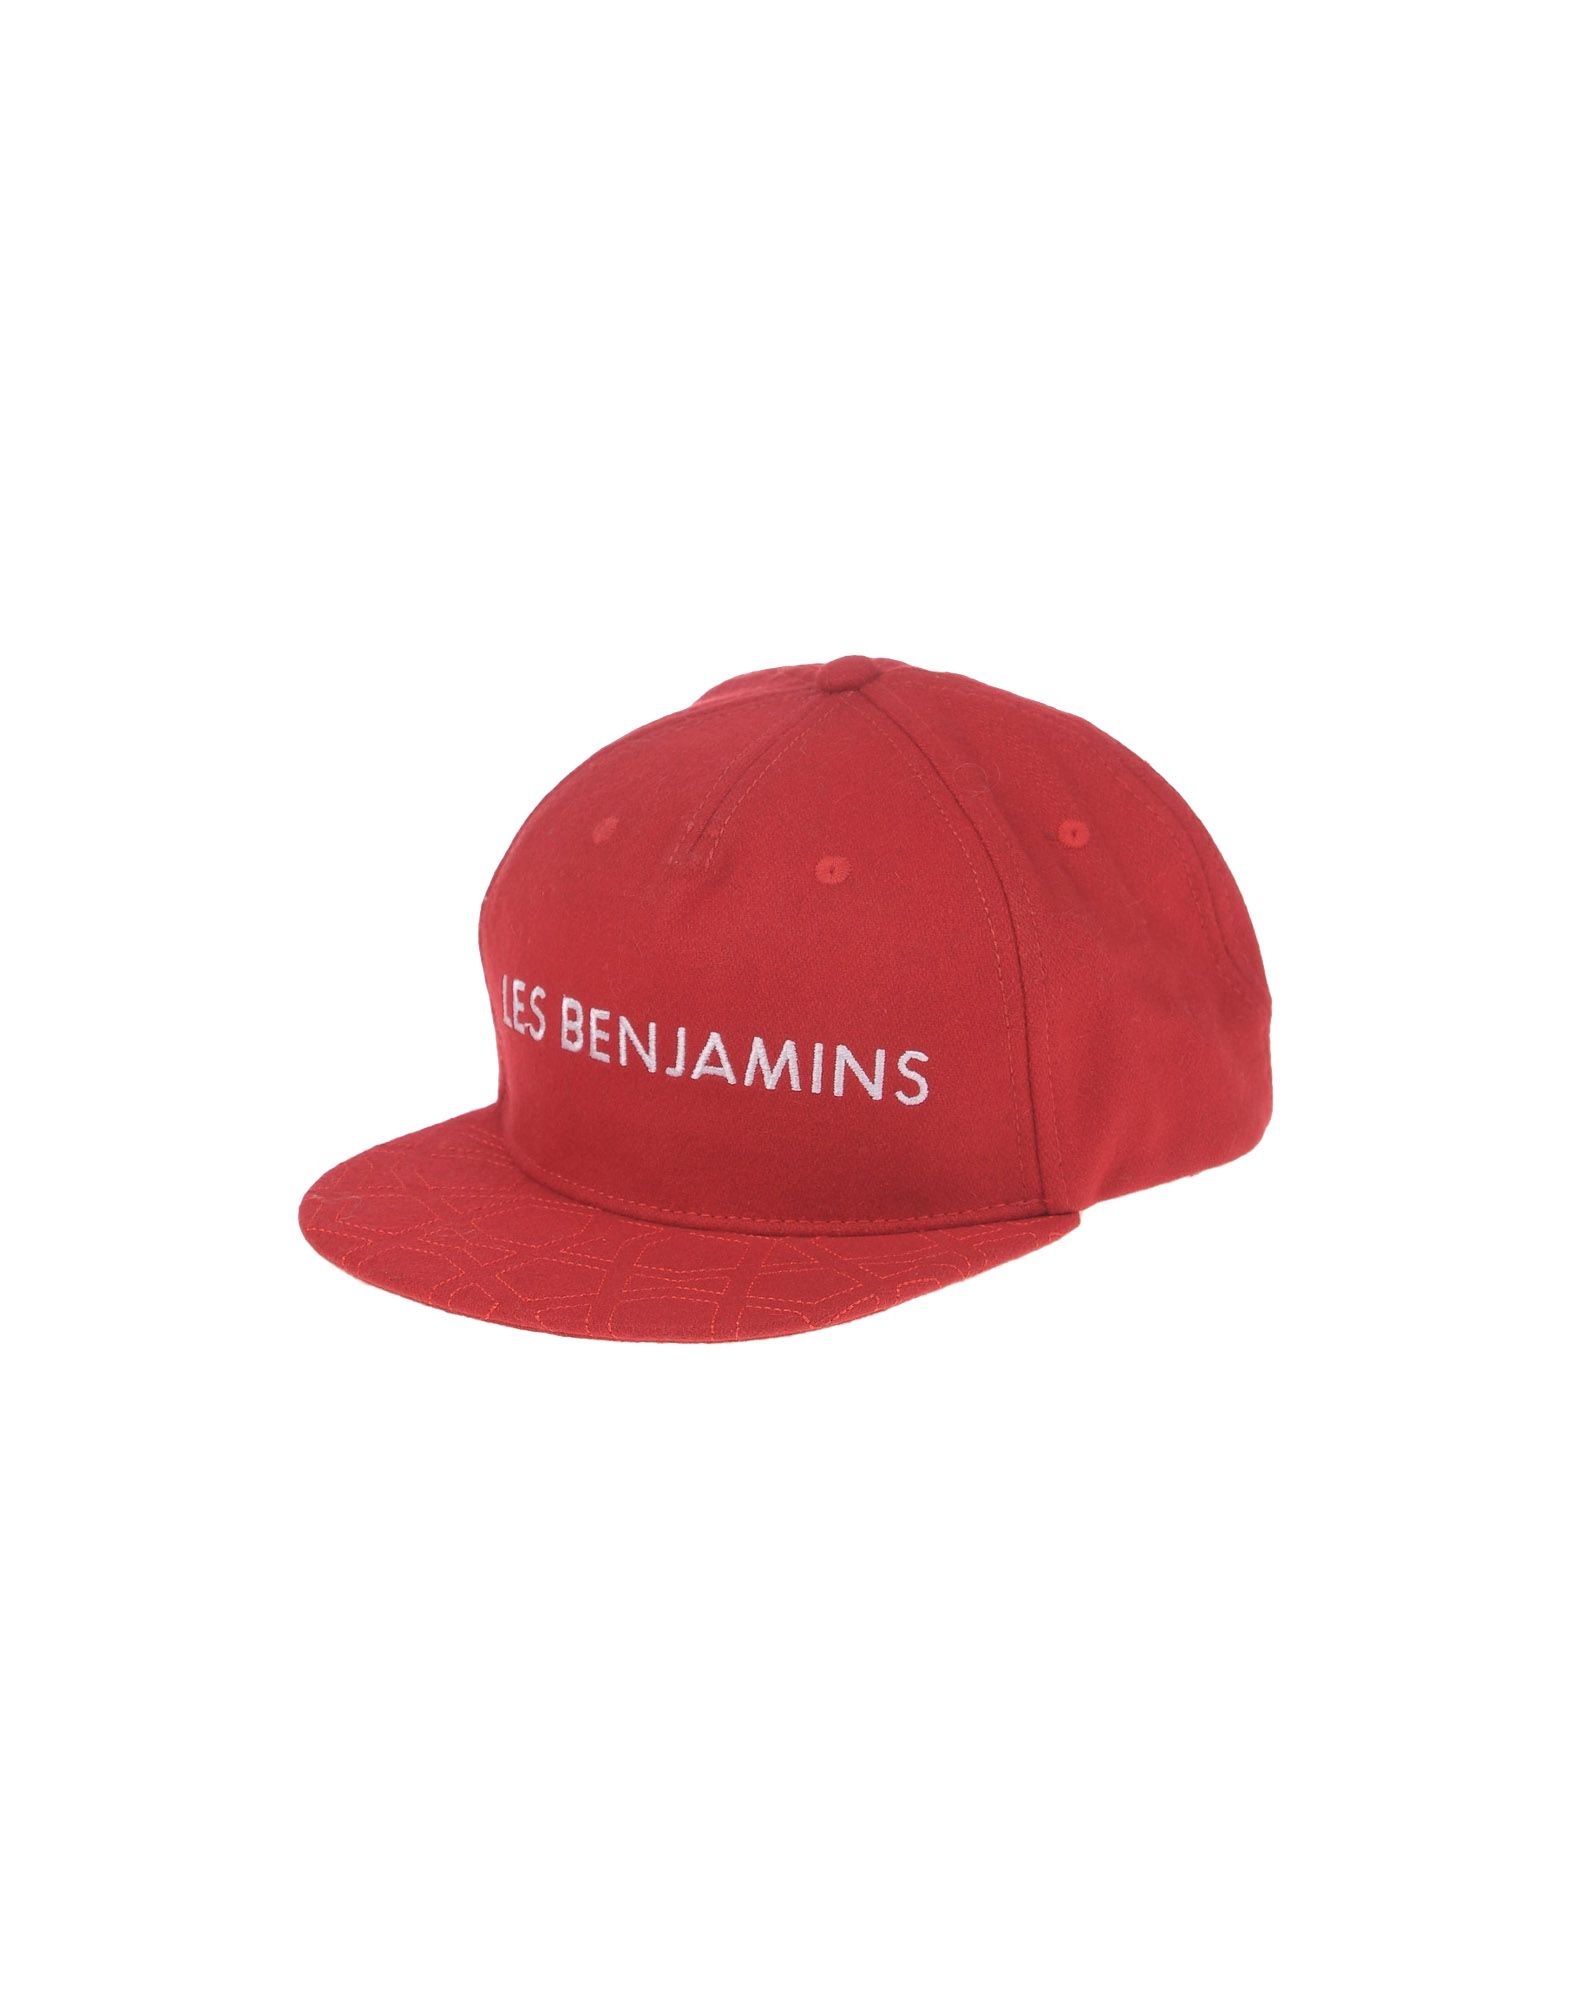 les benjamins hat